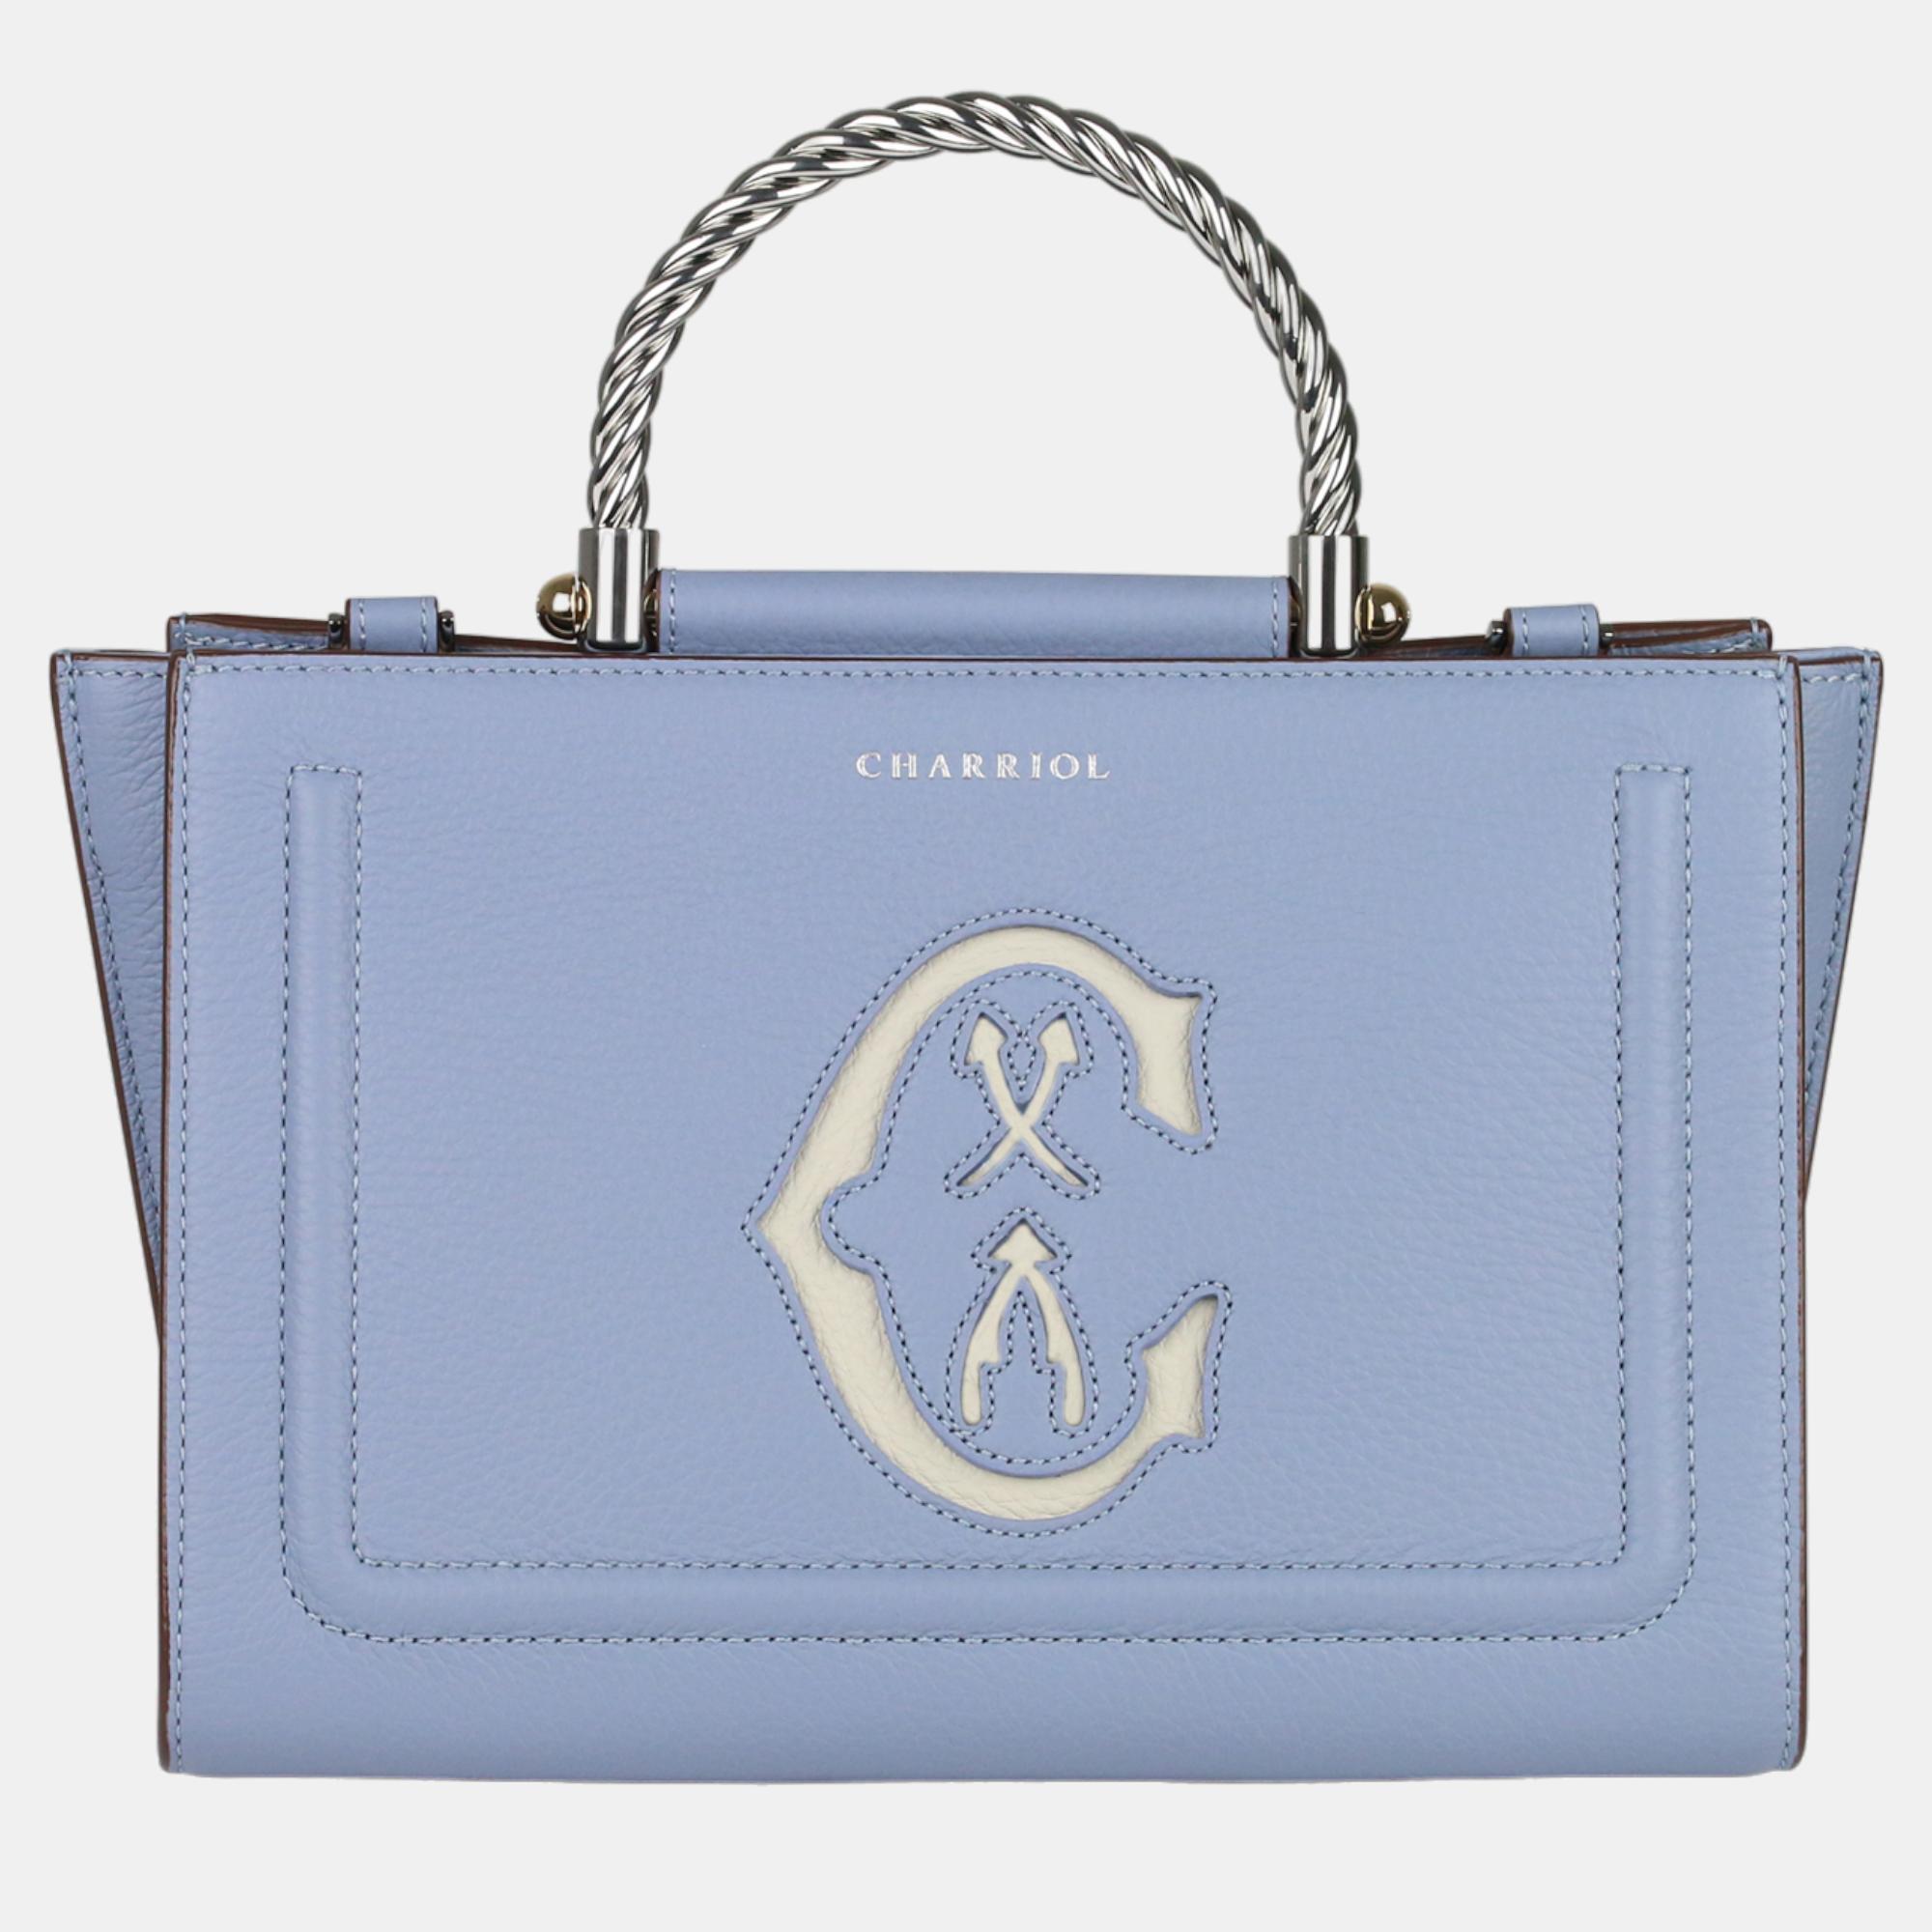 Pre-owned Charriol Esprit Leather Marie Olga Handbag In Blue